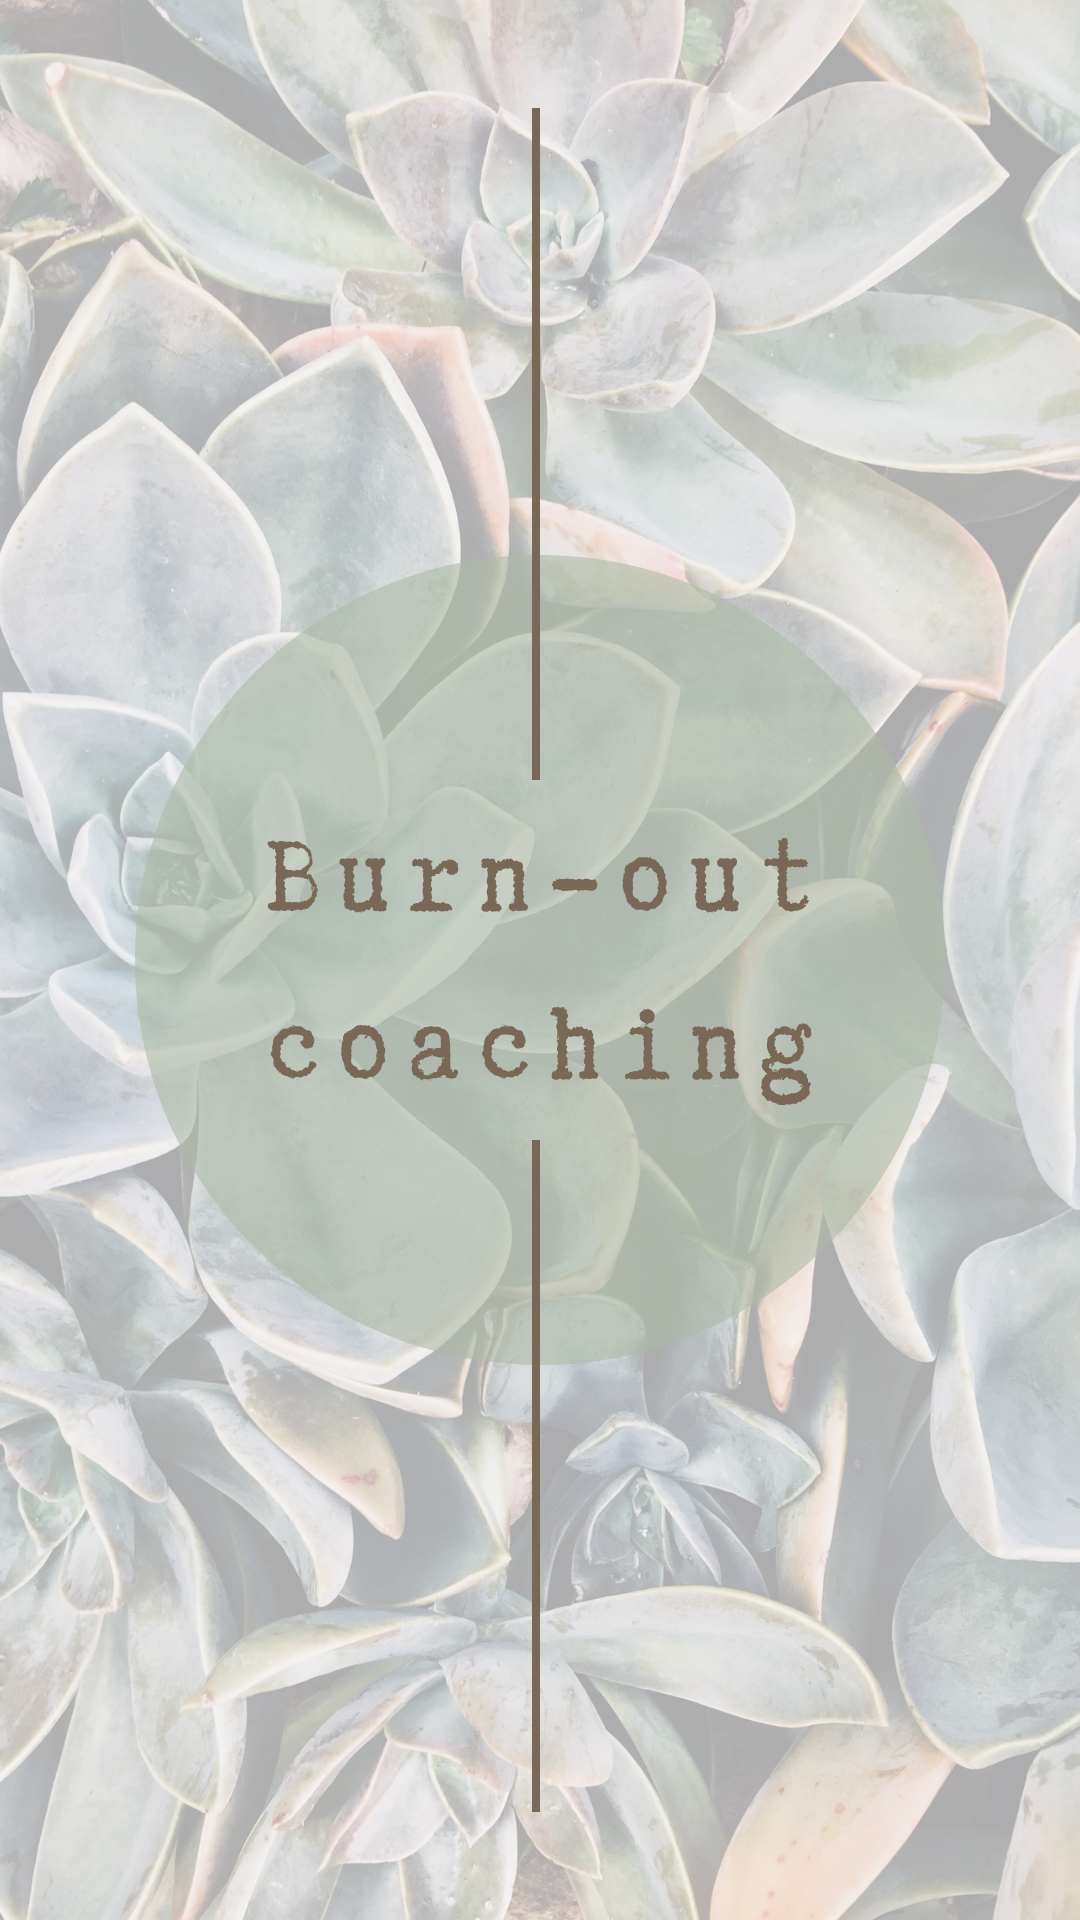 Burn-out coaching Wabi Sabi coaching